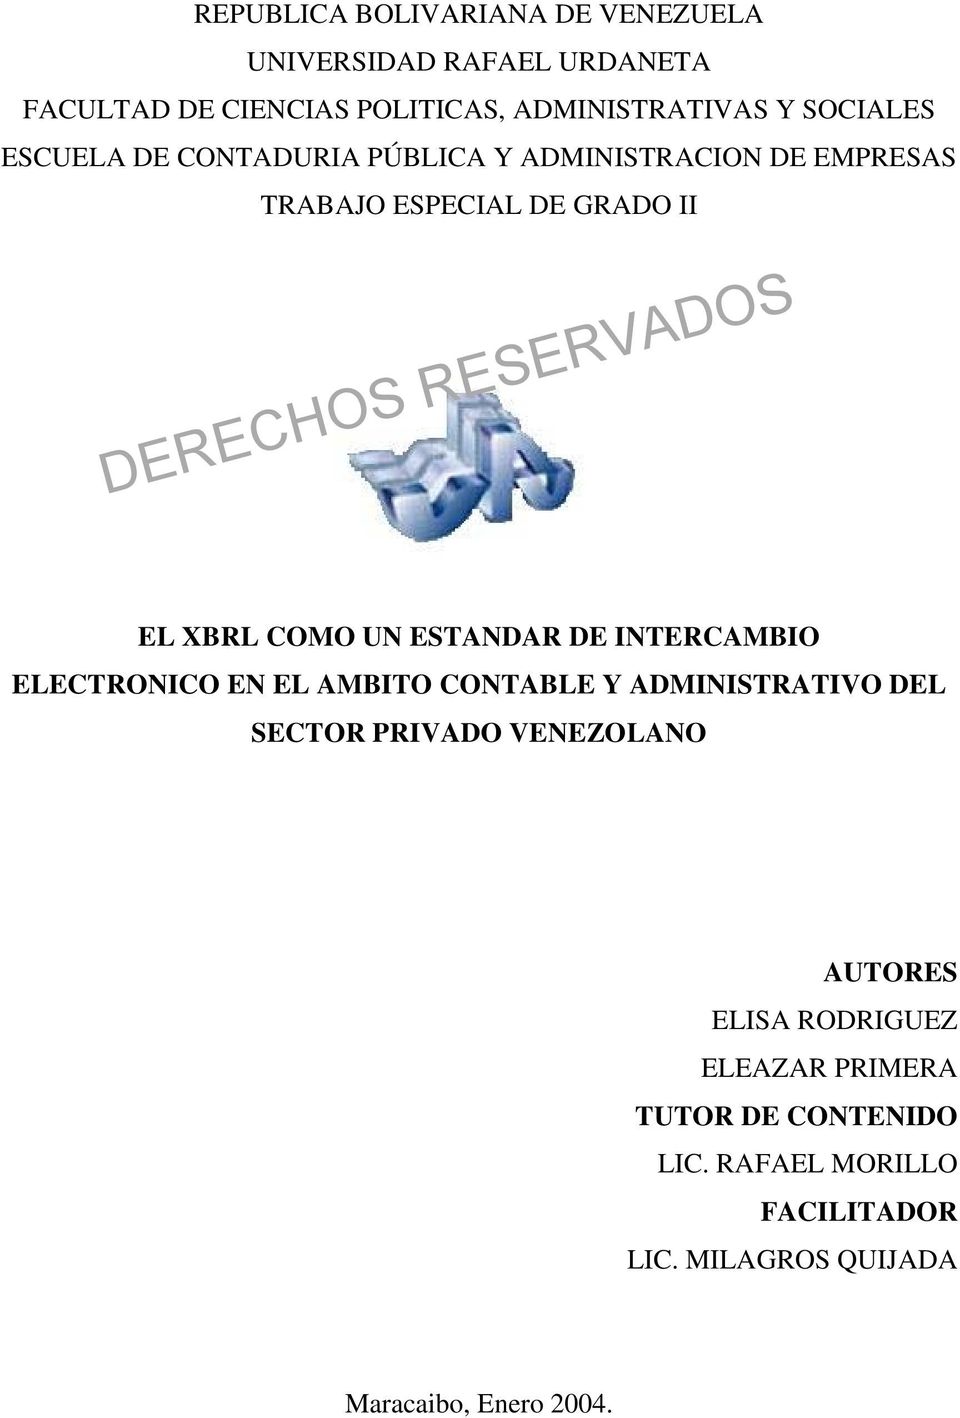 ESTANDAR DE INTERCAMBIO ELECTRONICO EN EL AMBITO CONTABLE Y ADMINISTRATIVO DEL SECTOR PRIVADO VENEZOLANO AUTORES